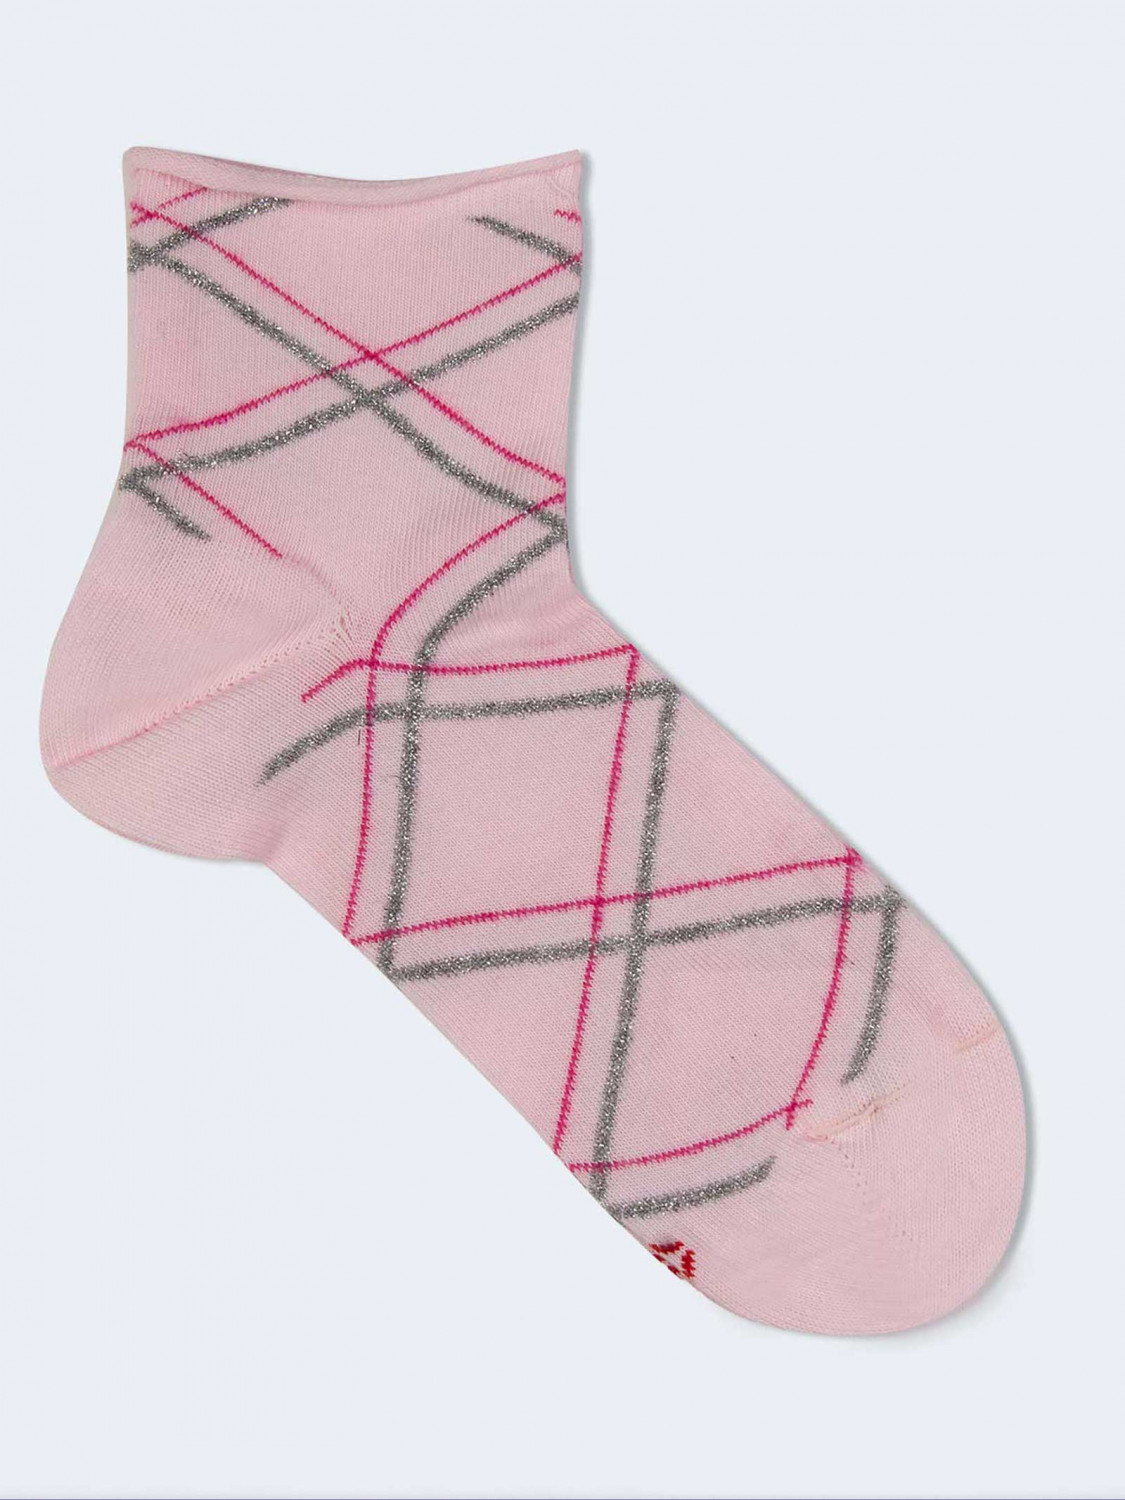 Rhombus patterned short socks for girl